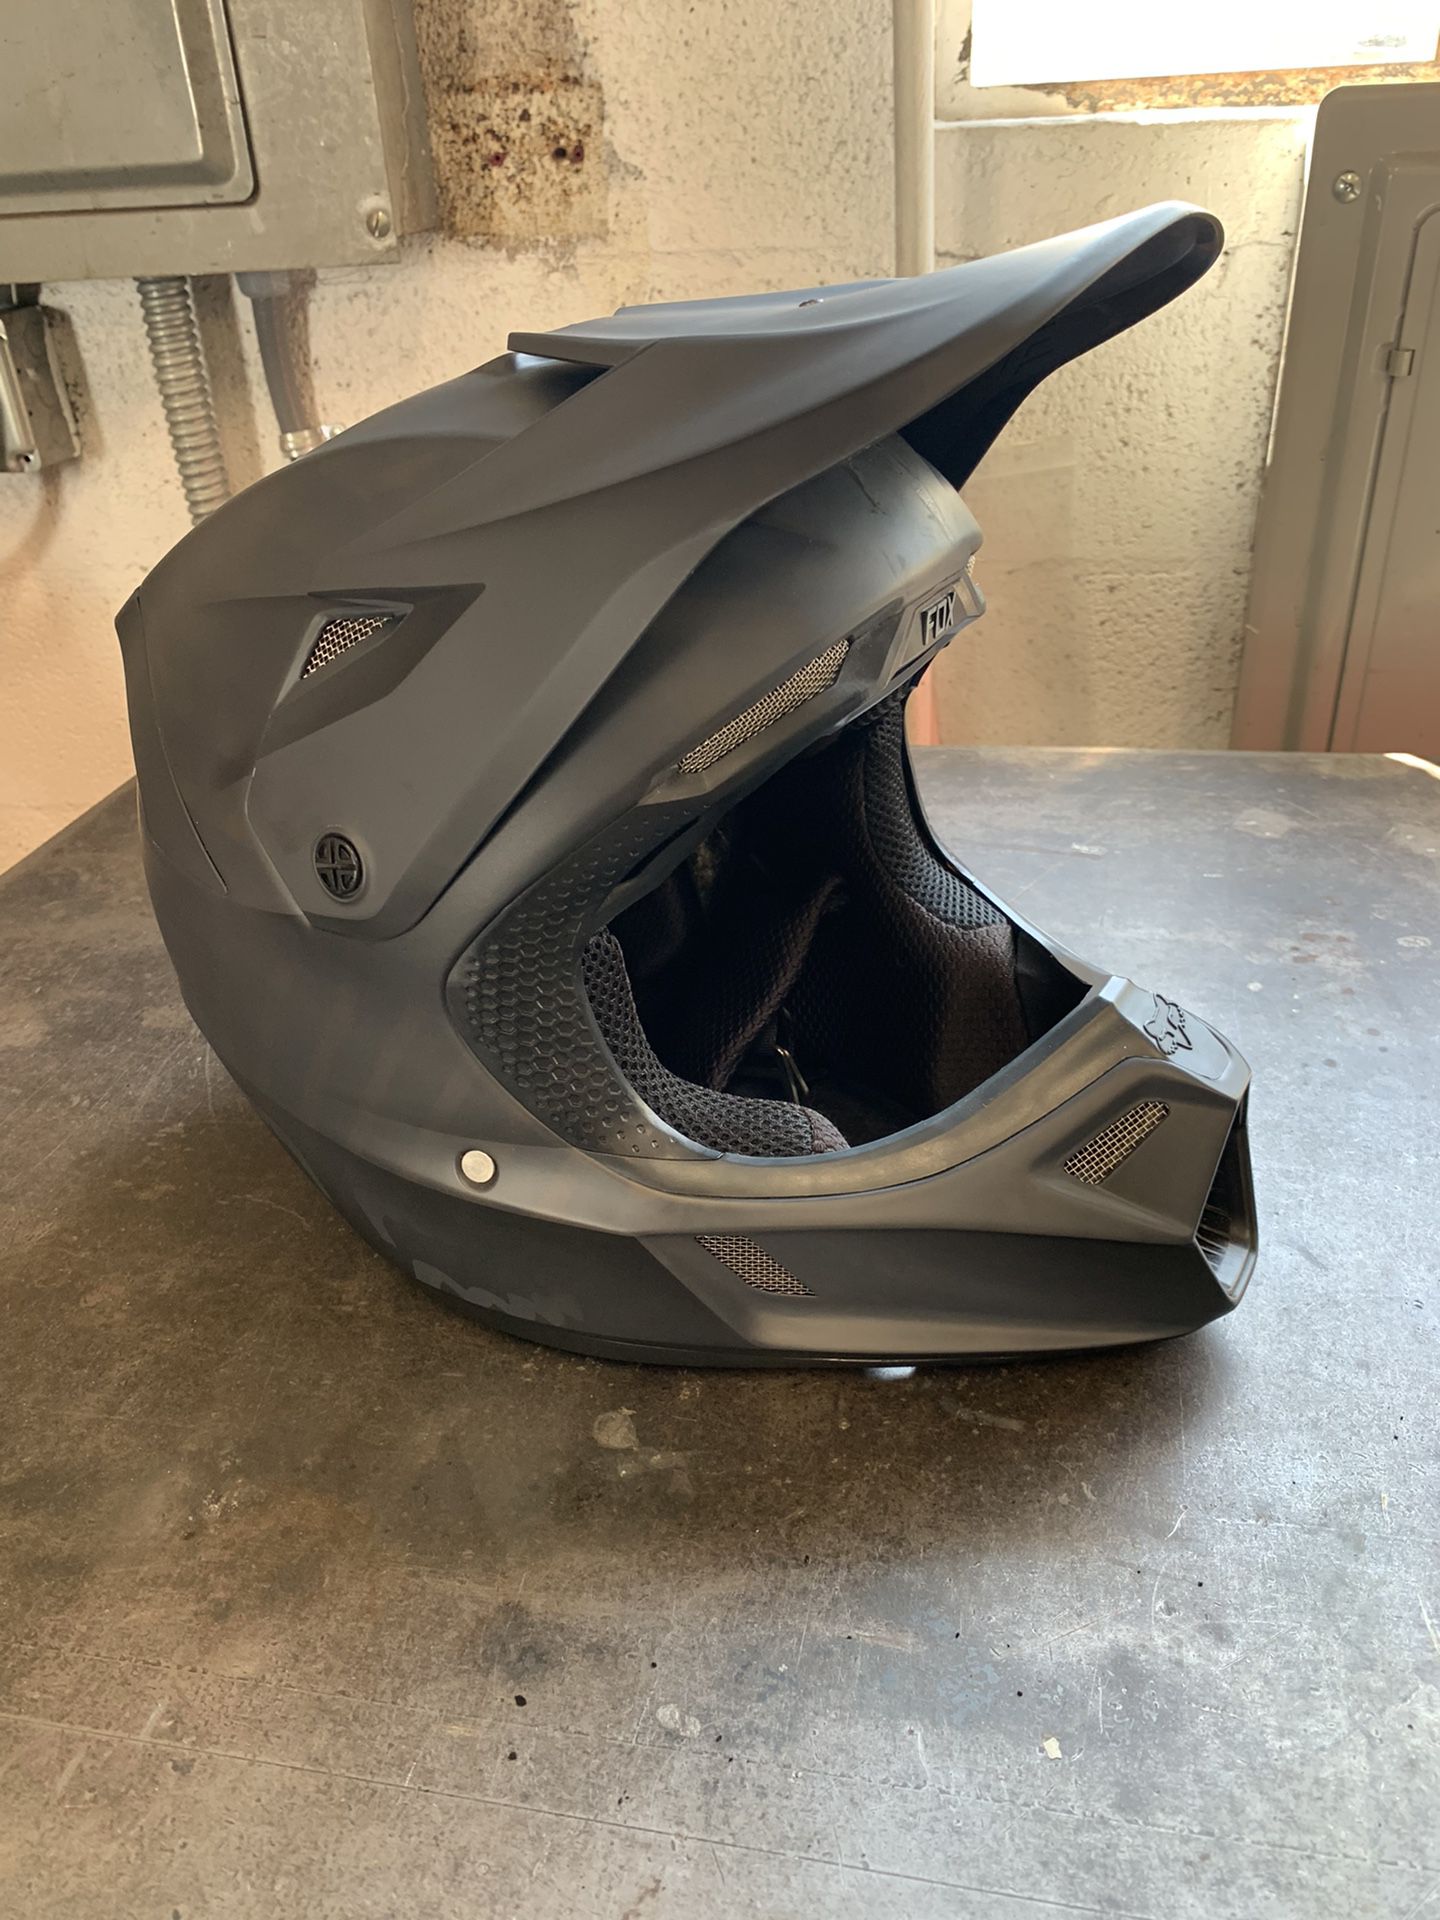 FOX Motorcycle Helmet